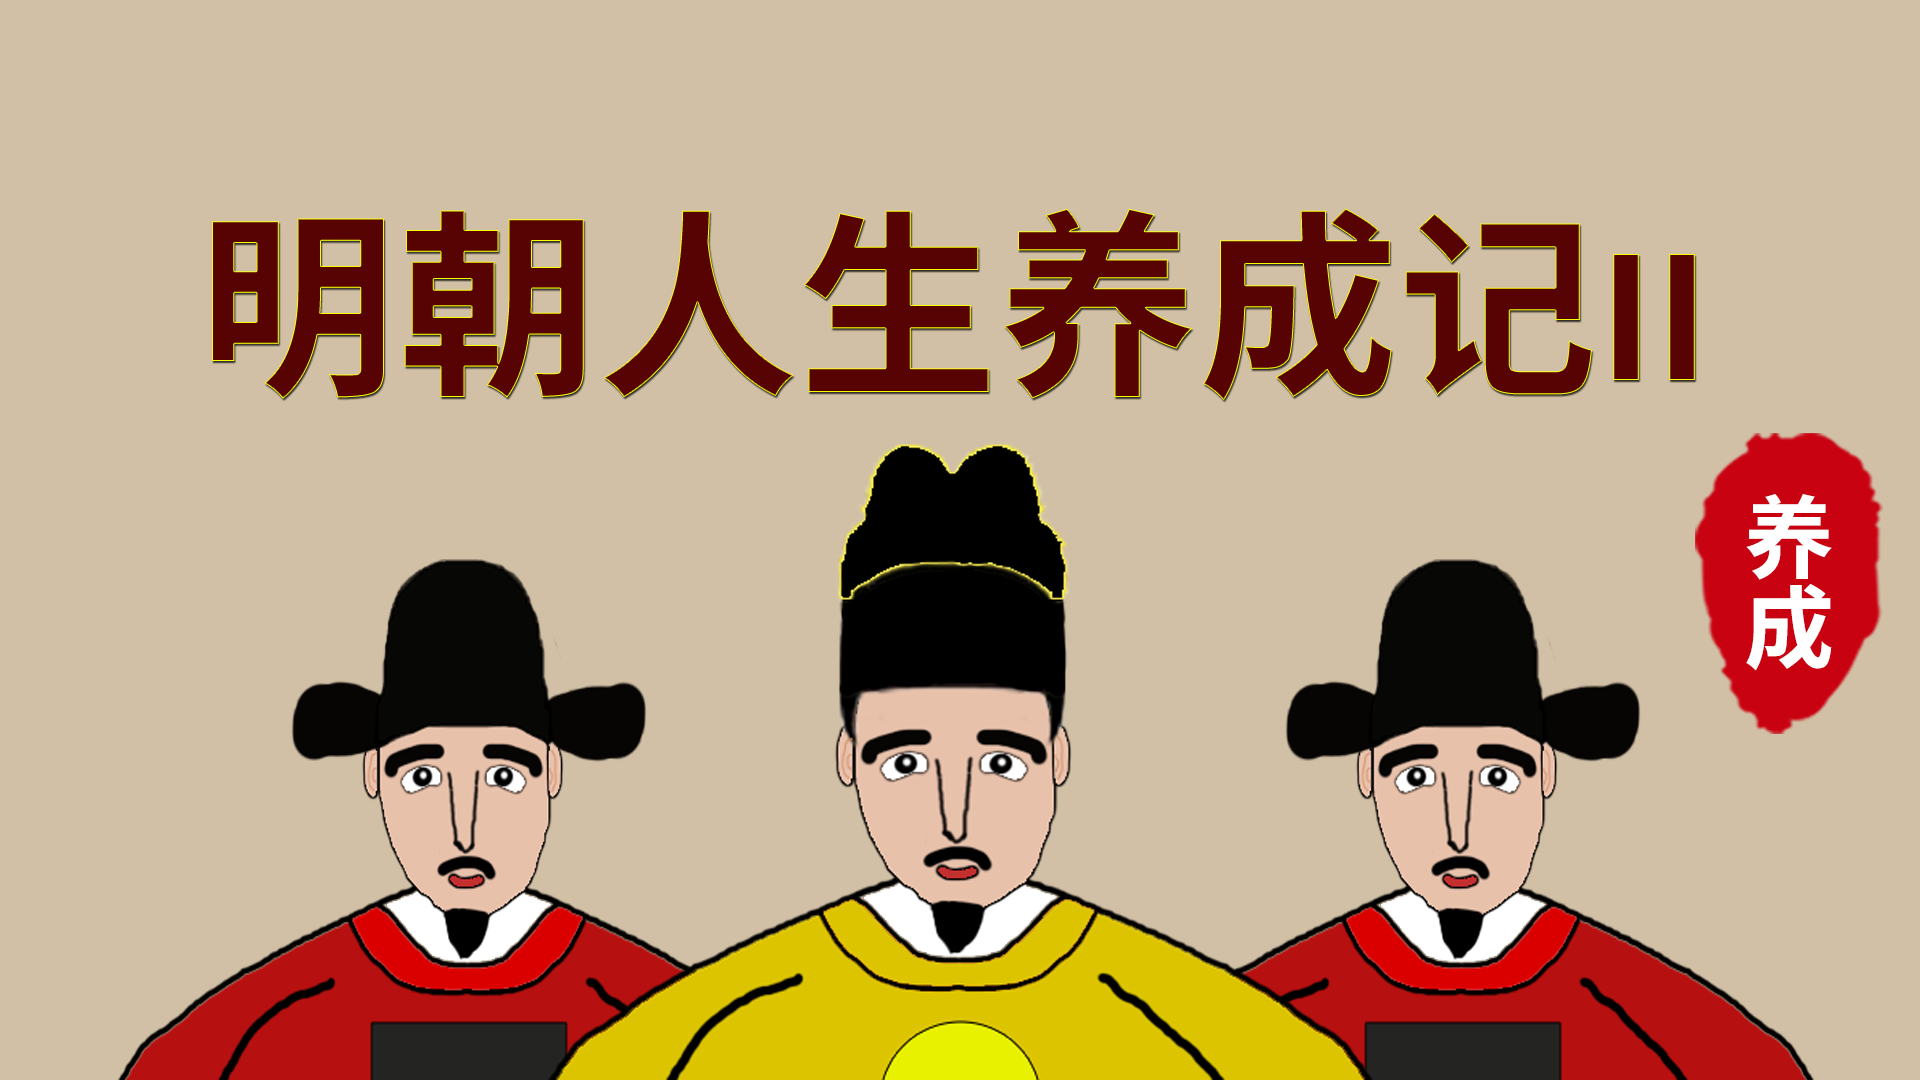 Banner of Historia del desarrollo de la vida de la dinastía Ming 2 